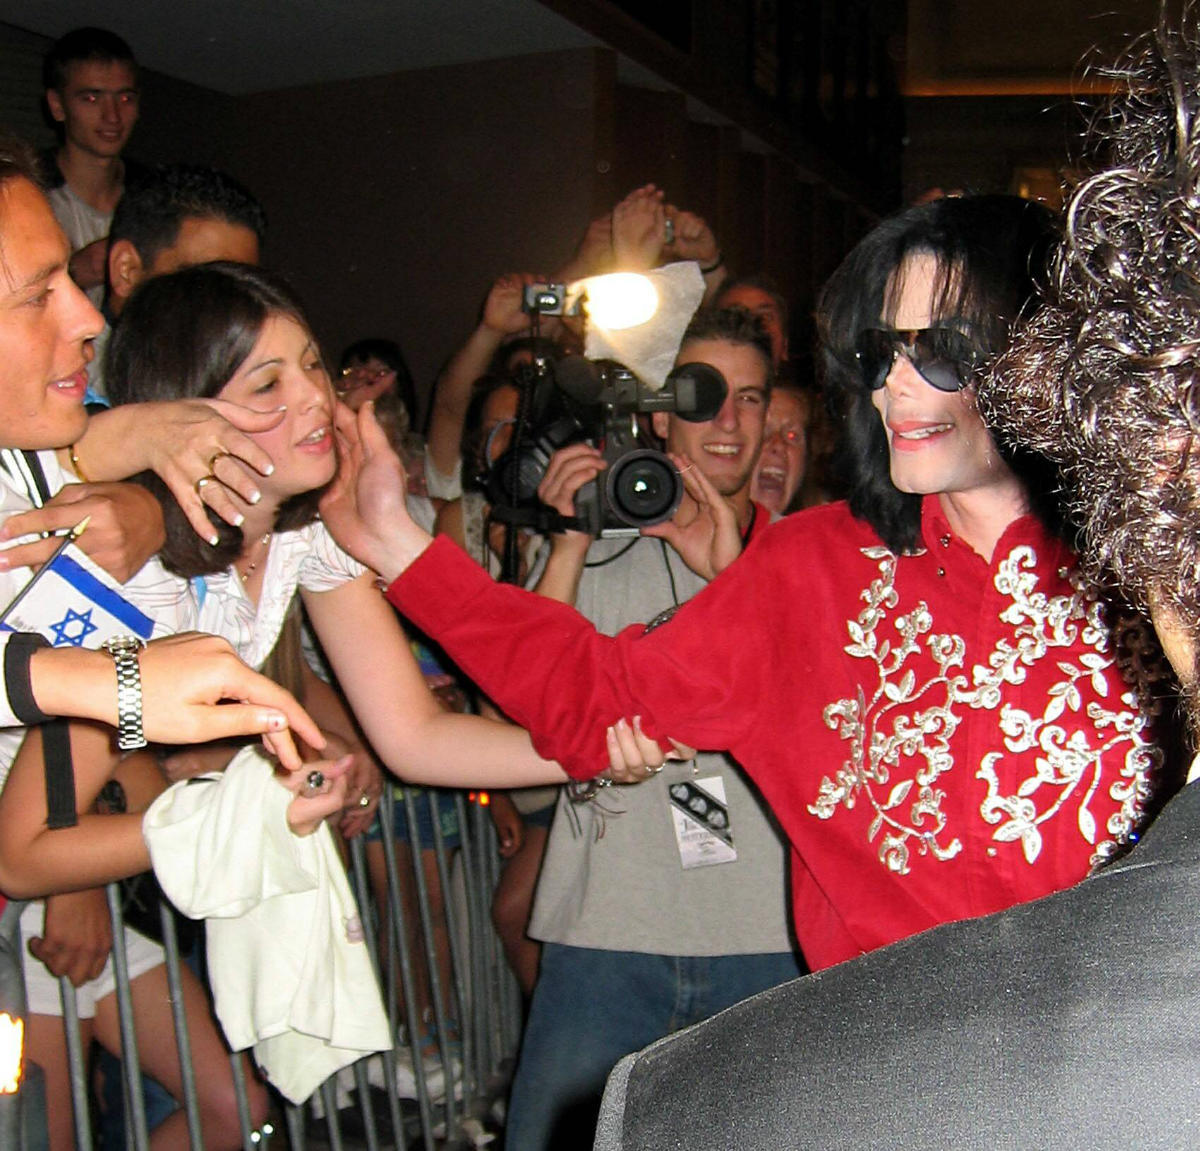 Fans True Michael Jackson Images, Photos, Reviews